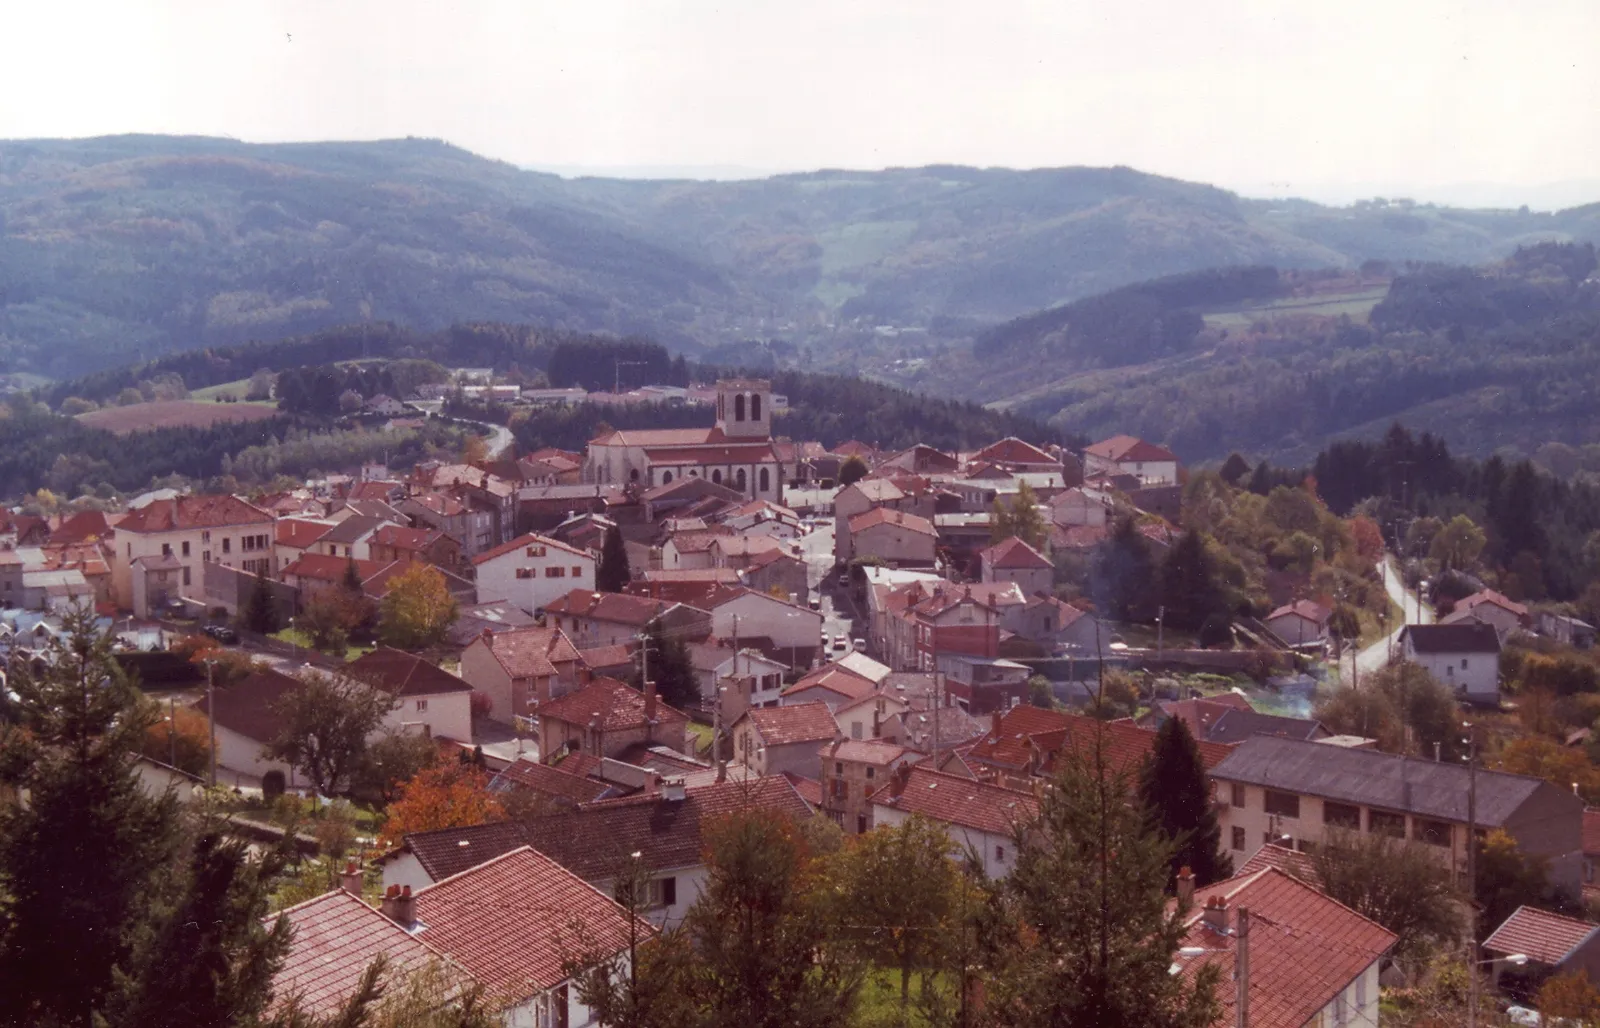 Image of Saint-Rémy-sur-Durolle